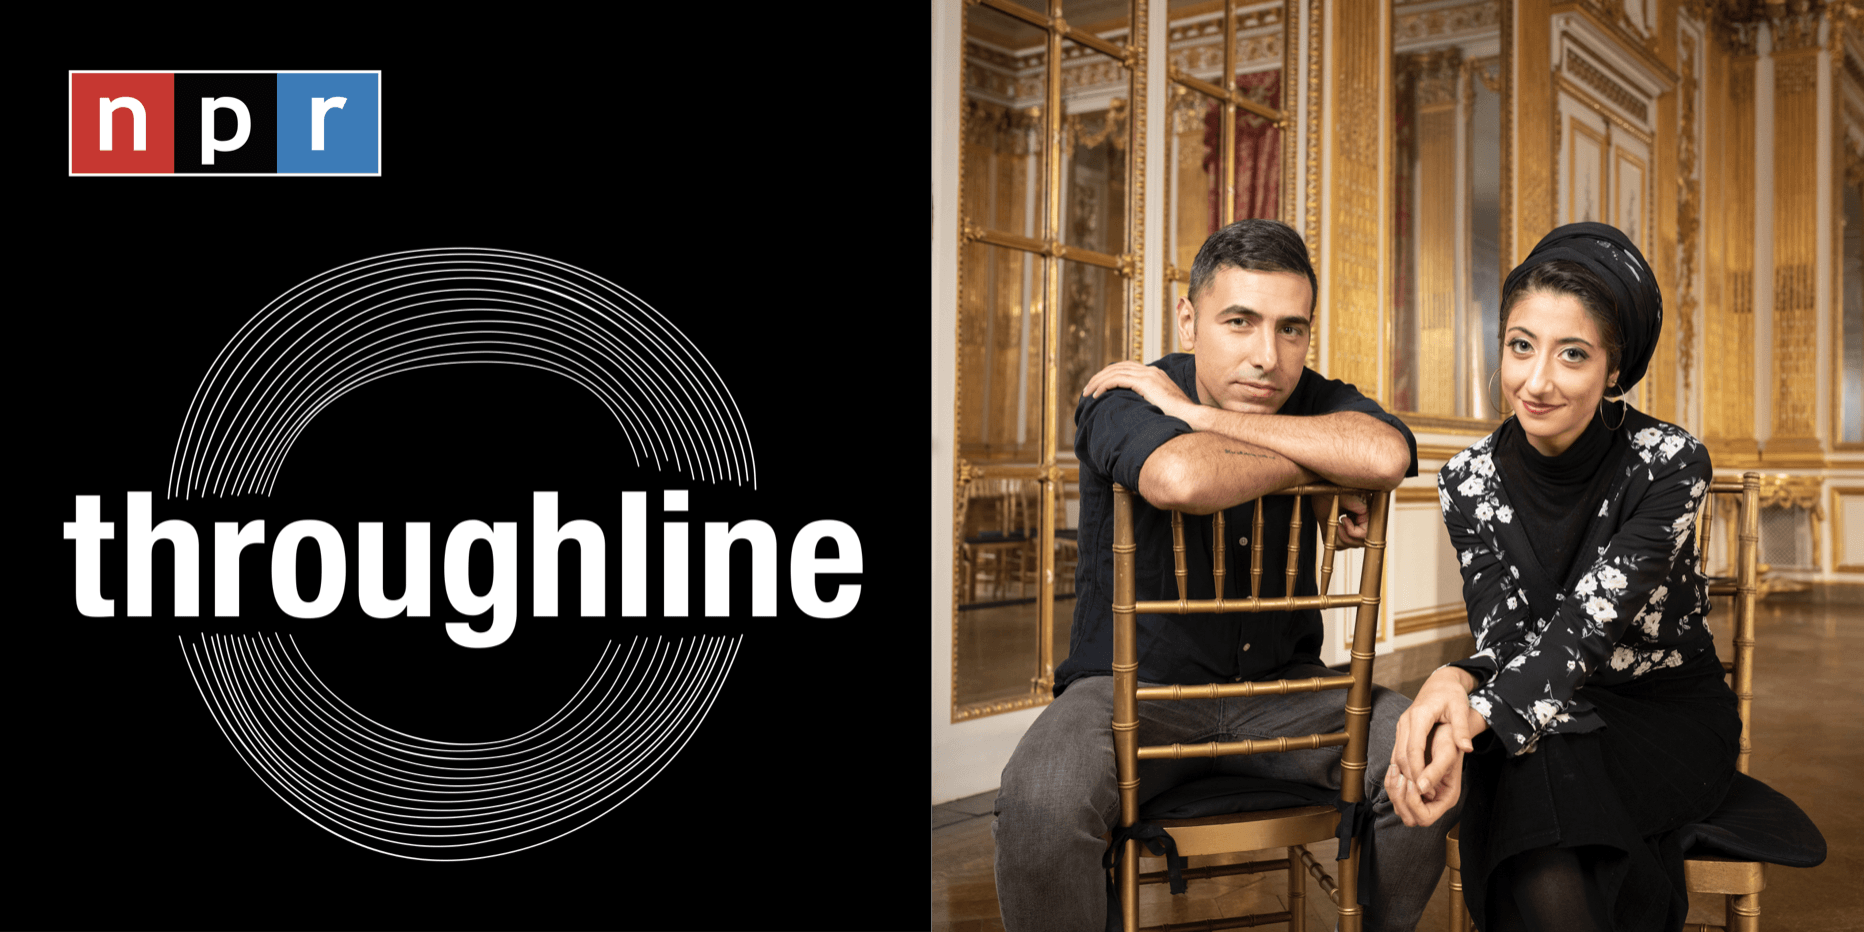 NPR Throughline Podcast Review